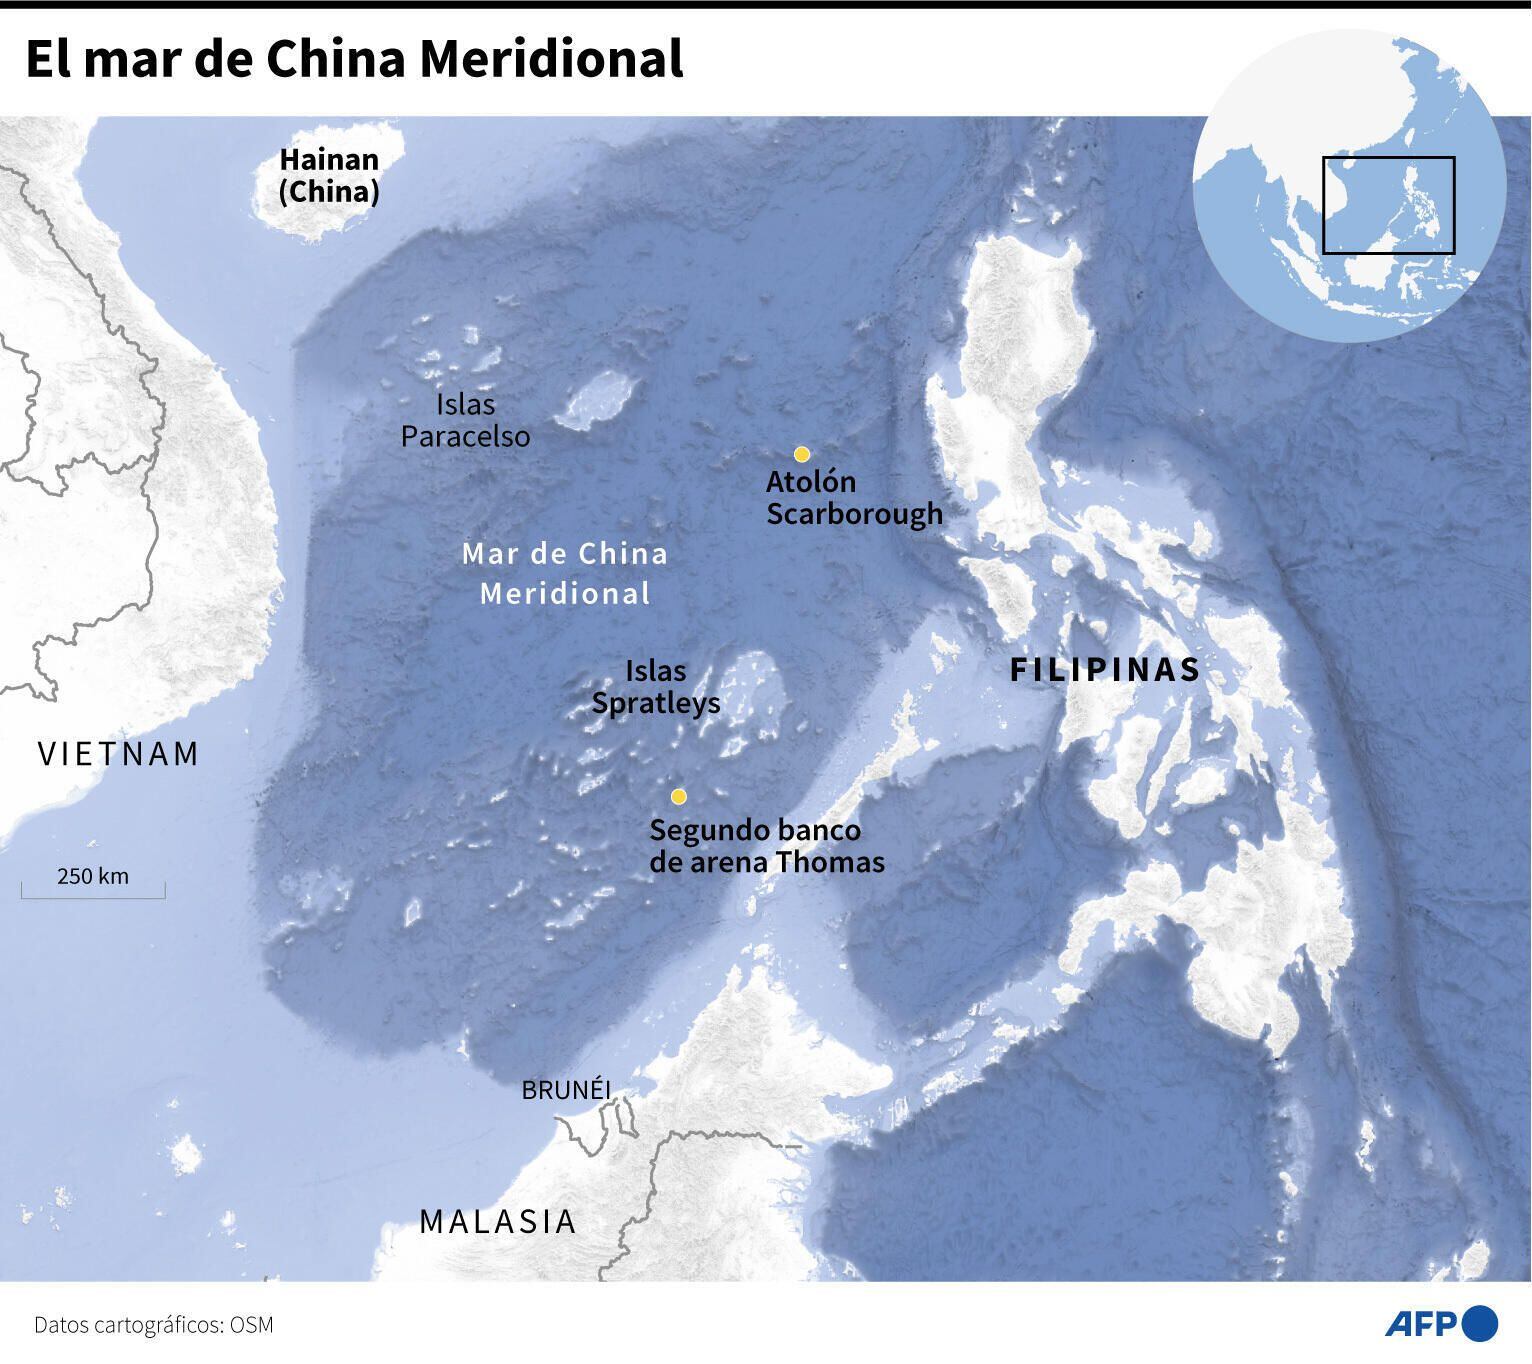 Filipinas, Bruneí, Taiwán, Vietnám, Malasia y China reclaman soberanía sobre el mar de China Meridional. Foto: Sophie Ramis y Valentin Rakovsky/AFP